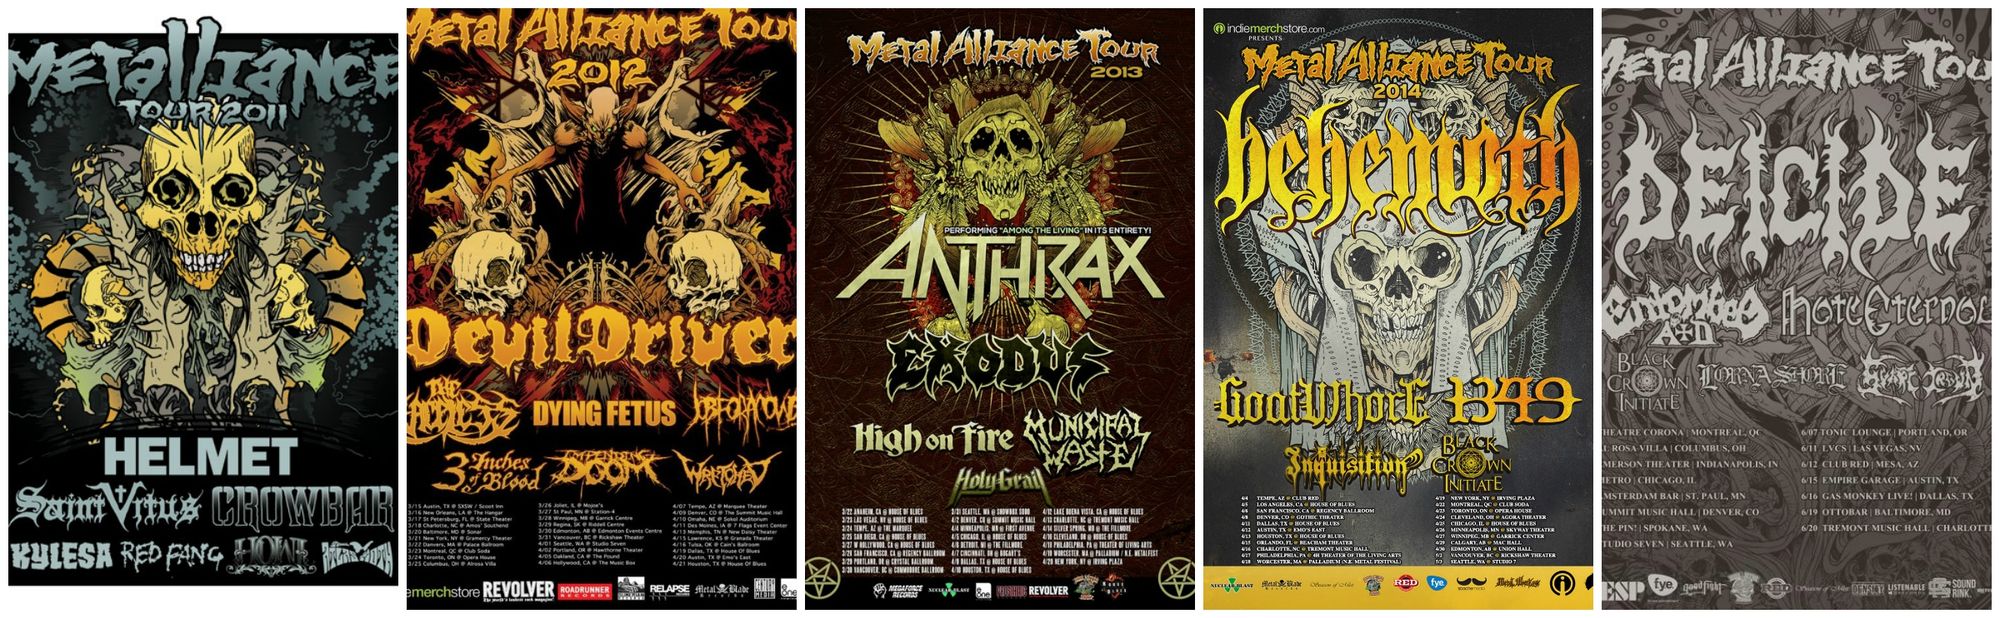 Metal Alliance Tour Collage